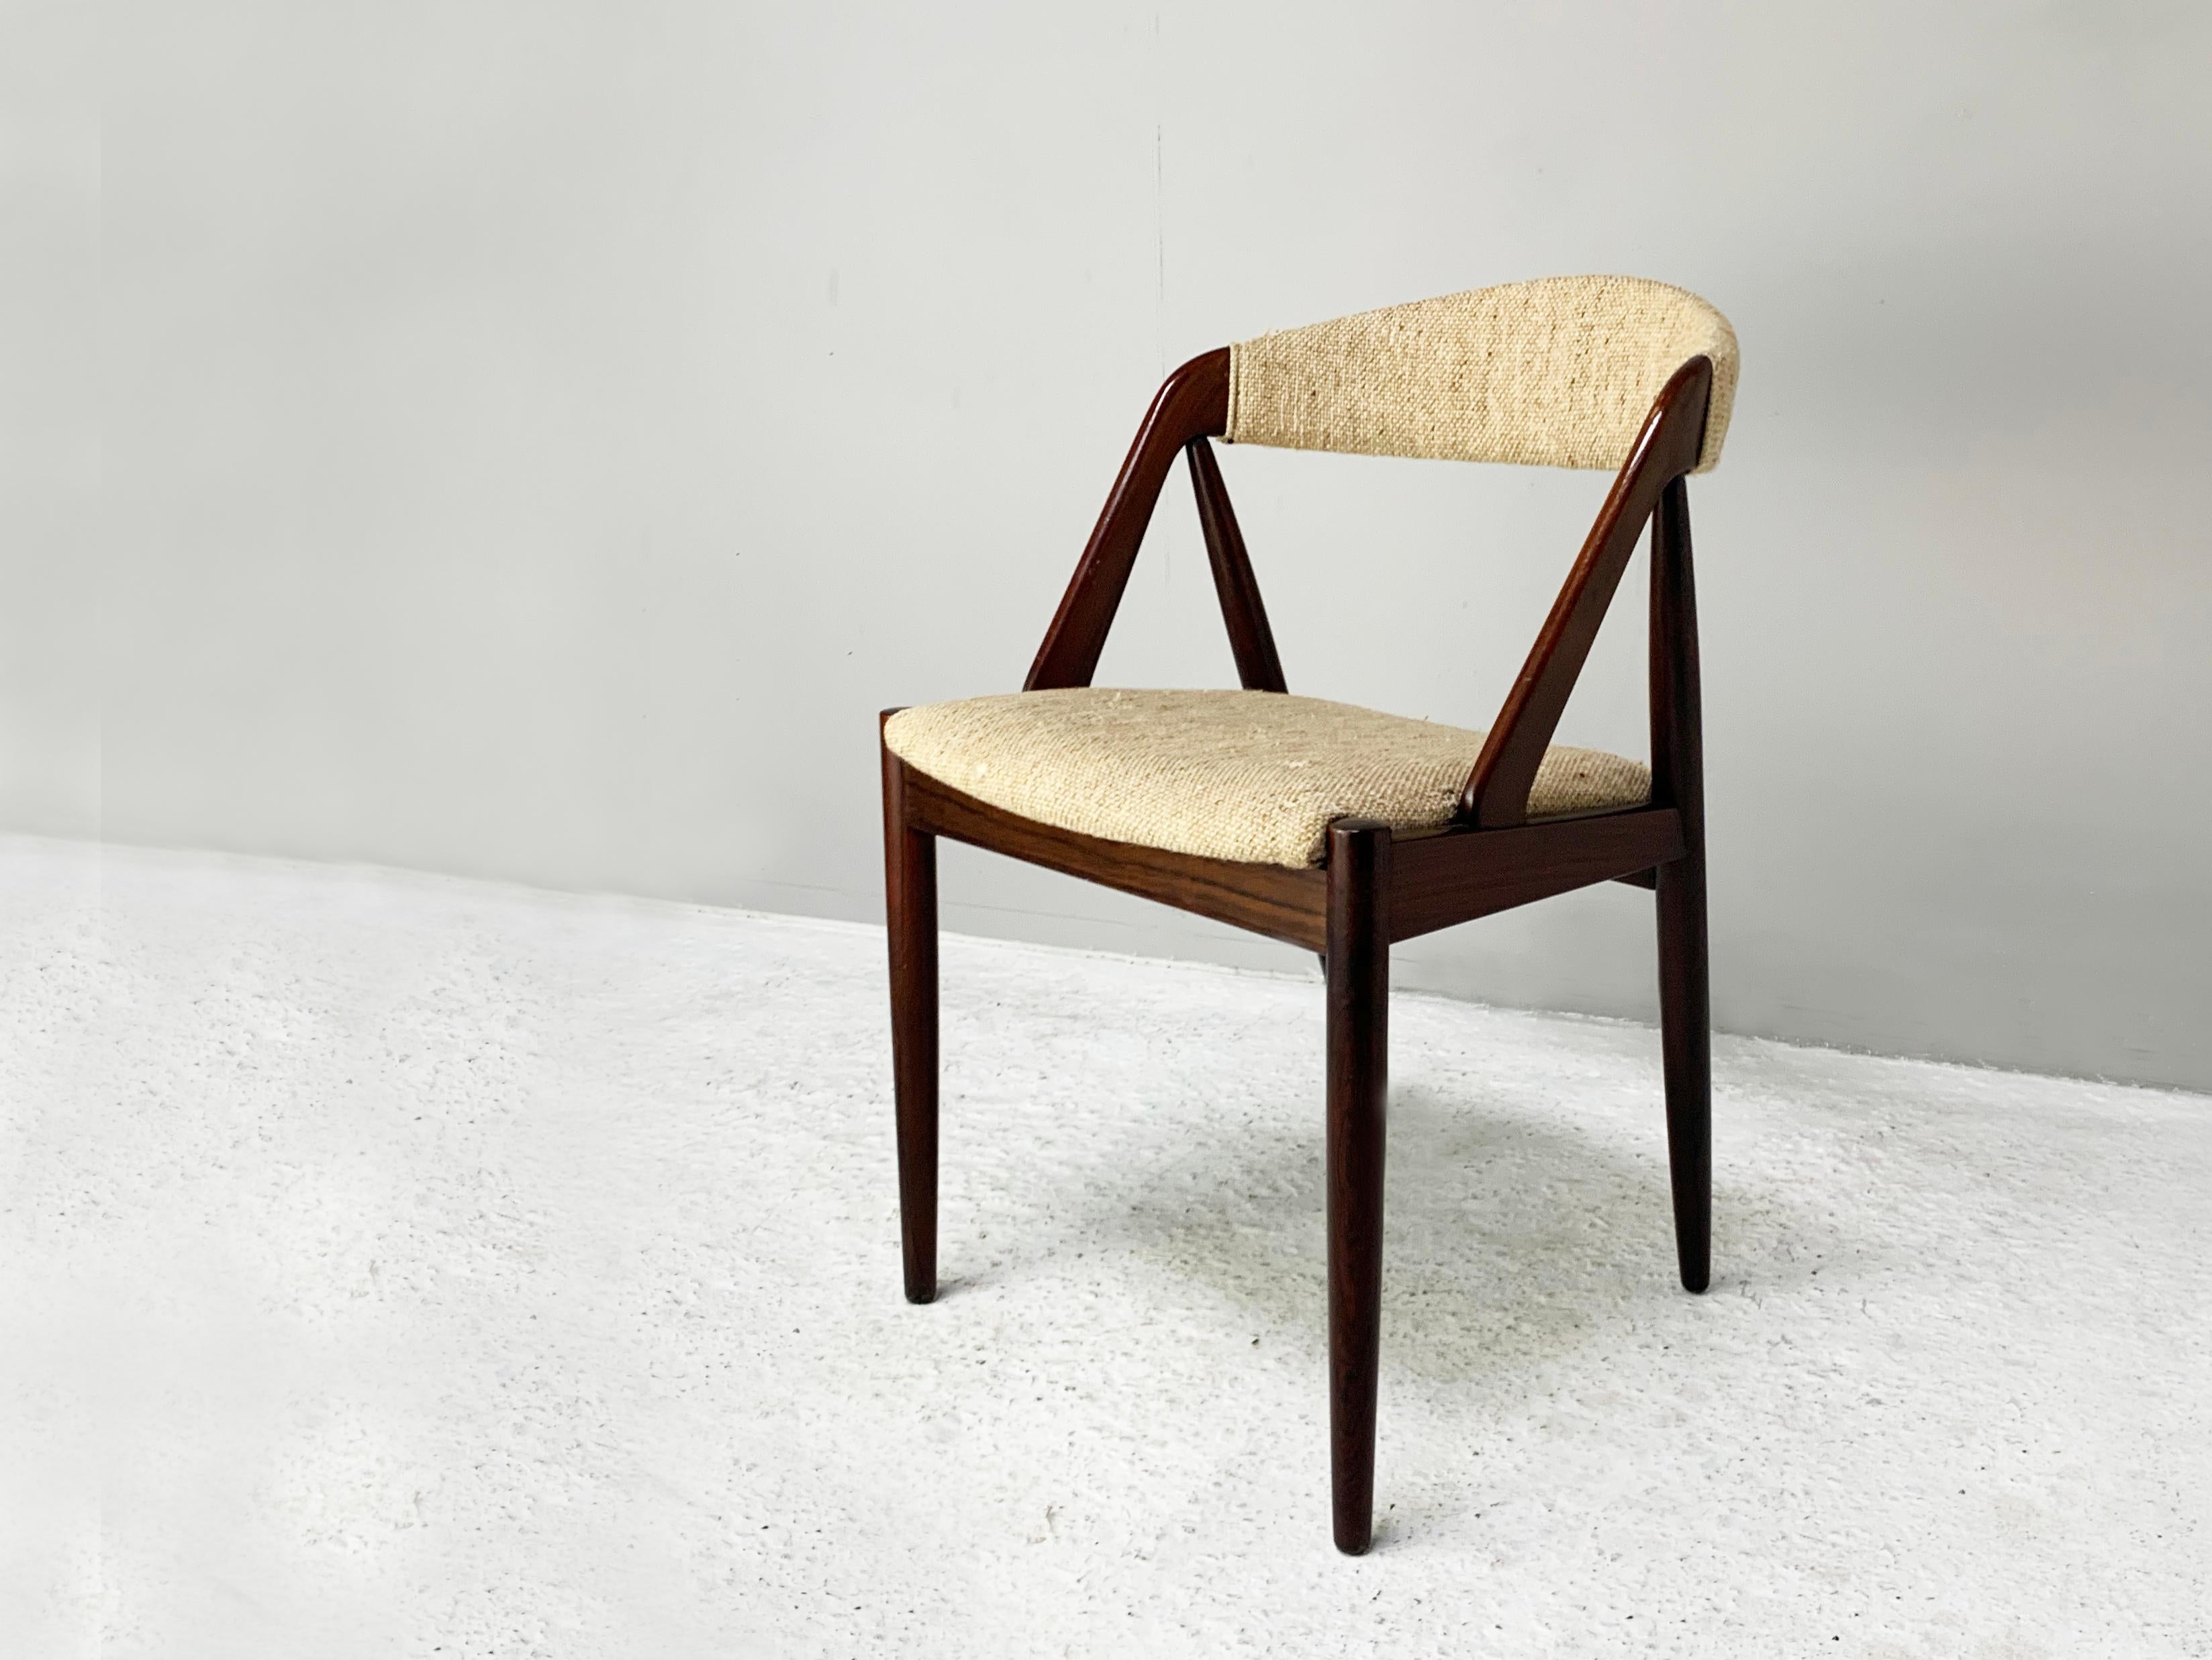 Le prix indiqué est pour une chaise. Il y a deux chaises disponibles.

Deux modèles 31, chaises conçues par Kai Kristiansen en 1956 et fabriquées par Schou Andersen Mobelfabrik dans les années 1960.

Cette chaise, à la silhouette classique, est un